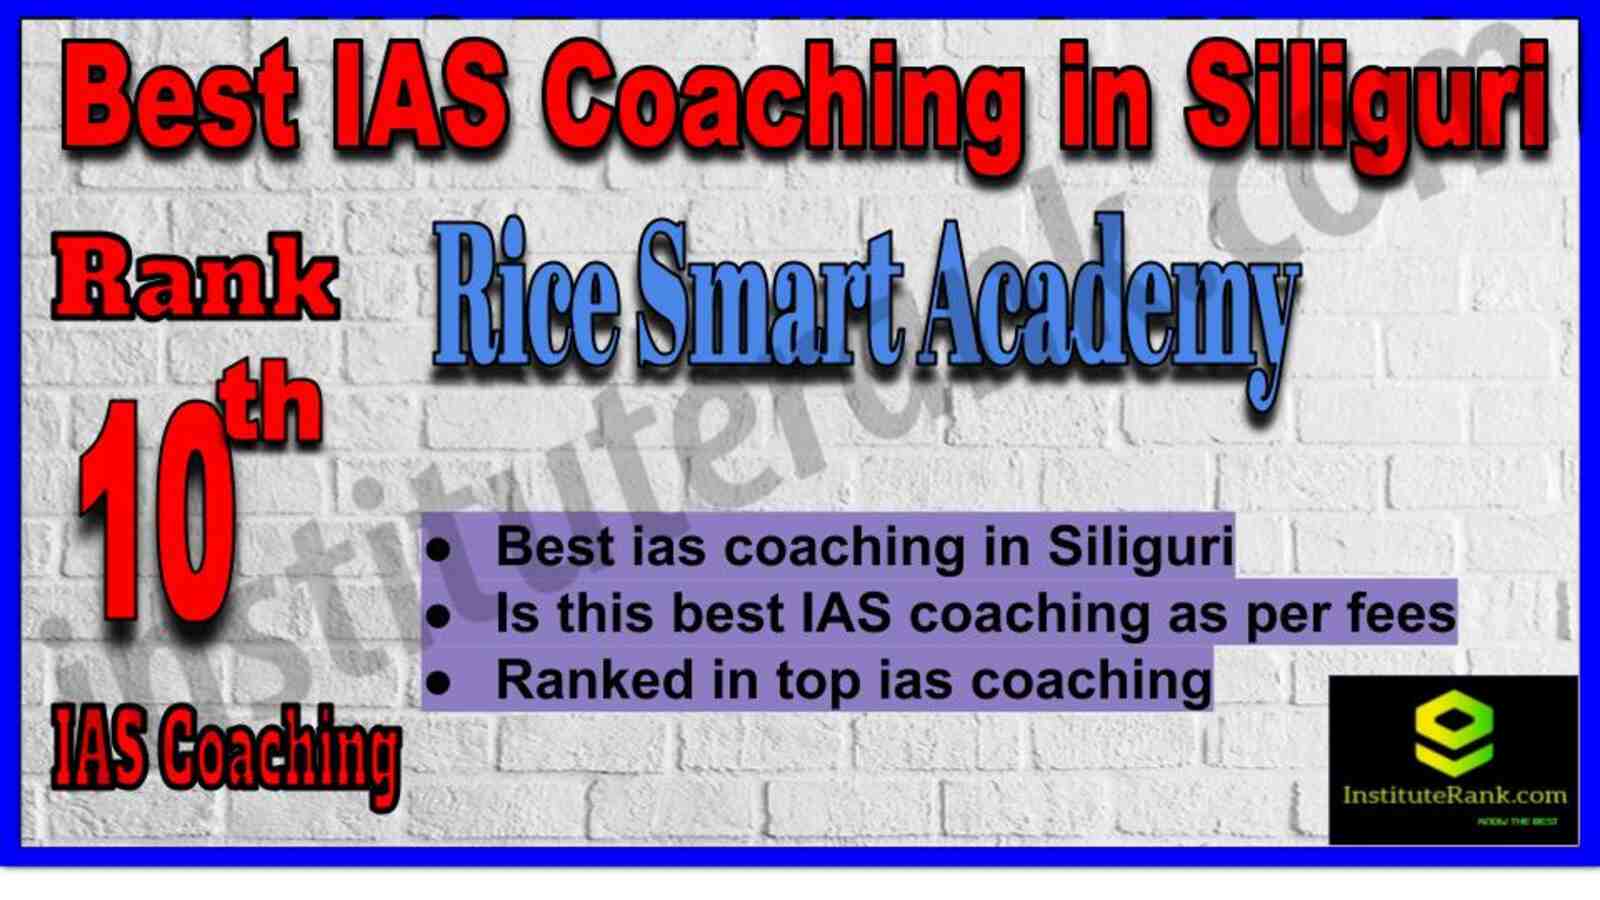 10th Best IAS Coaching in Siliguri